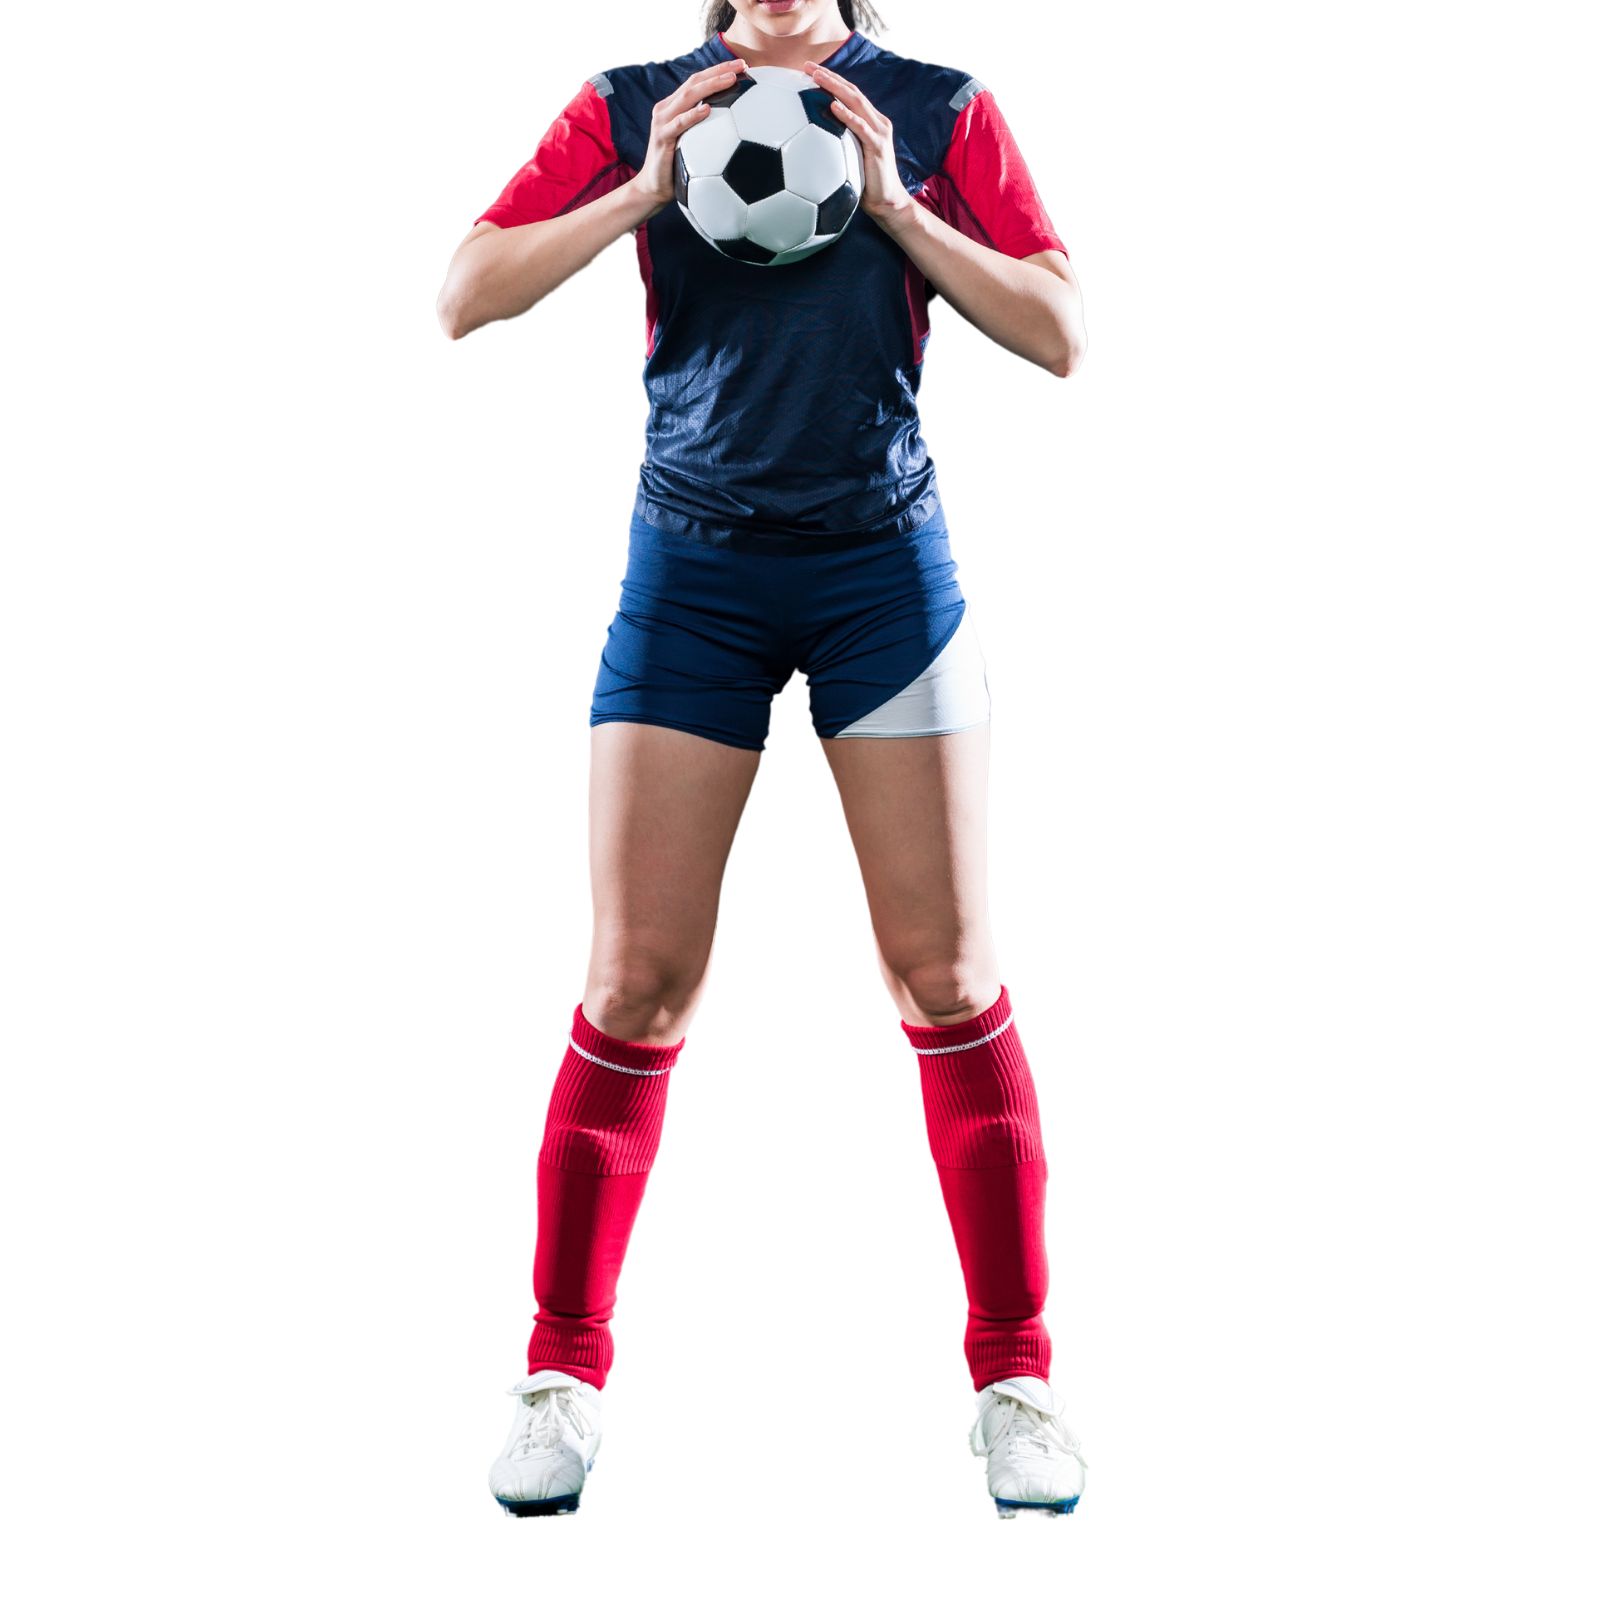 Top Notch Premium Quality Custom Made Soccer Uniform Manufacturer